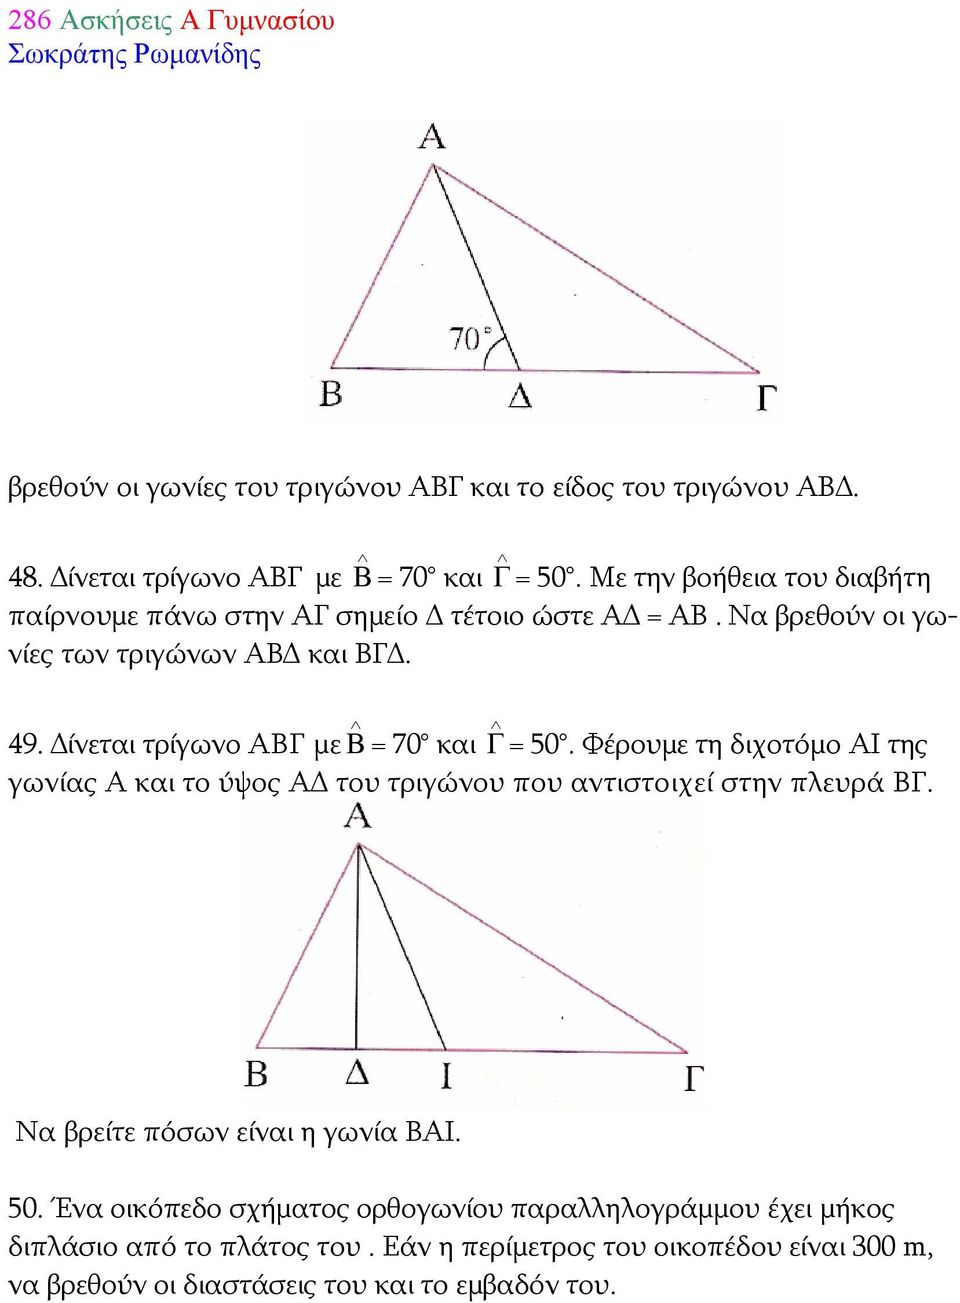 Δίνεται τρίγωνο ΑΒΓ με Β = 70 και Γ = 50. Φέρουμε τη διχοτόμο ΑΙ της γωνίας Α και το ύψος ΑΔ του τριγώνου που αντιστοιχεί στην πλευρά ΒΓ.